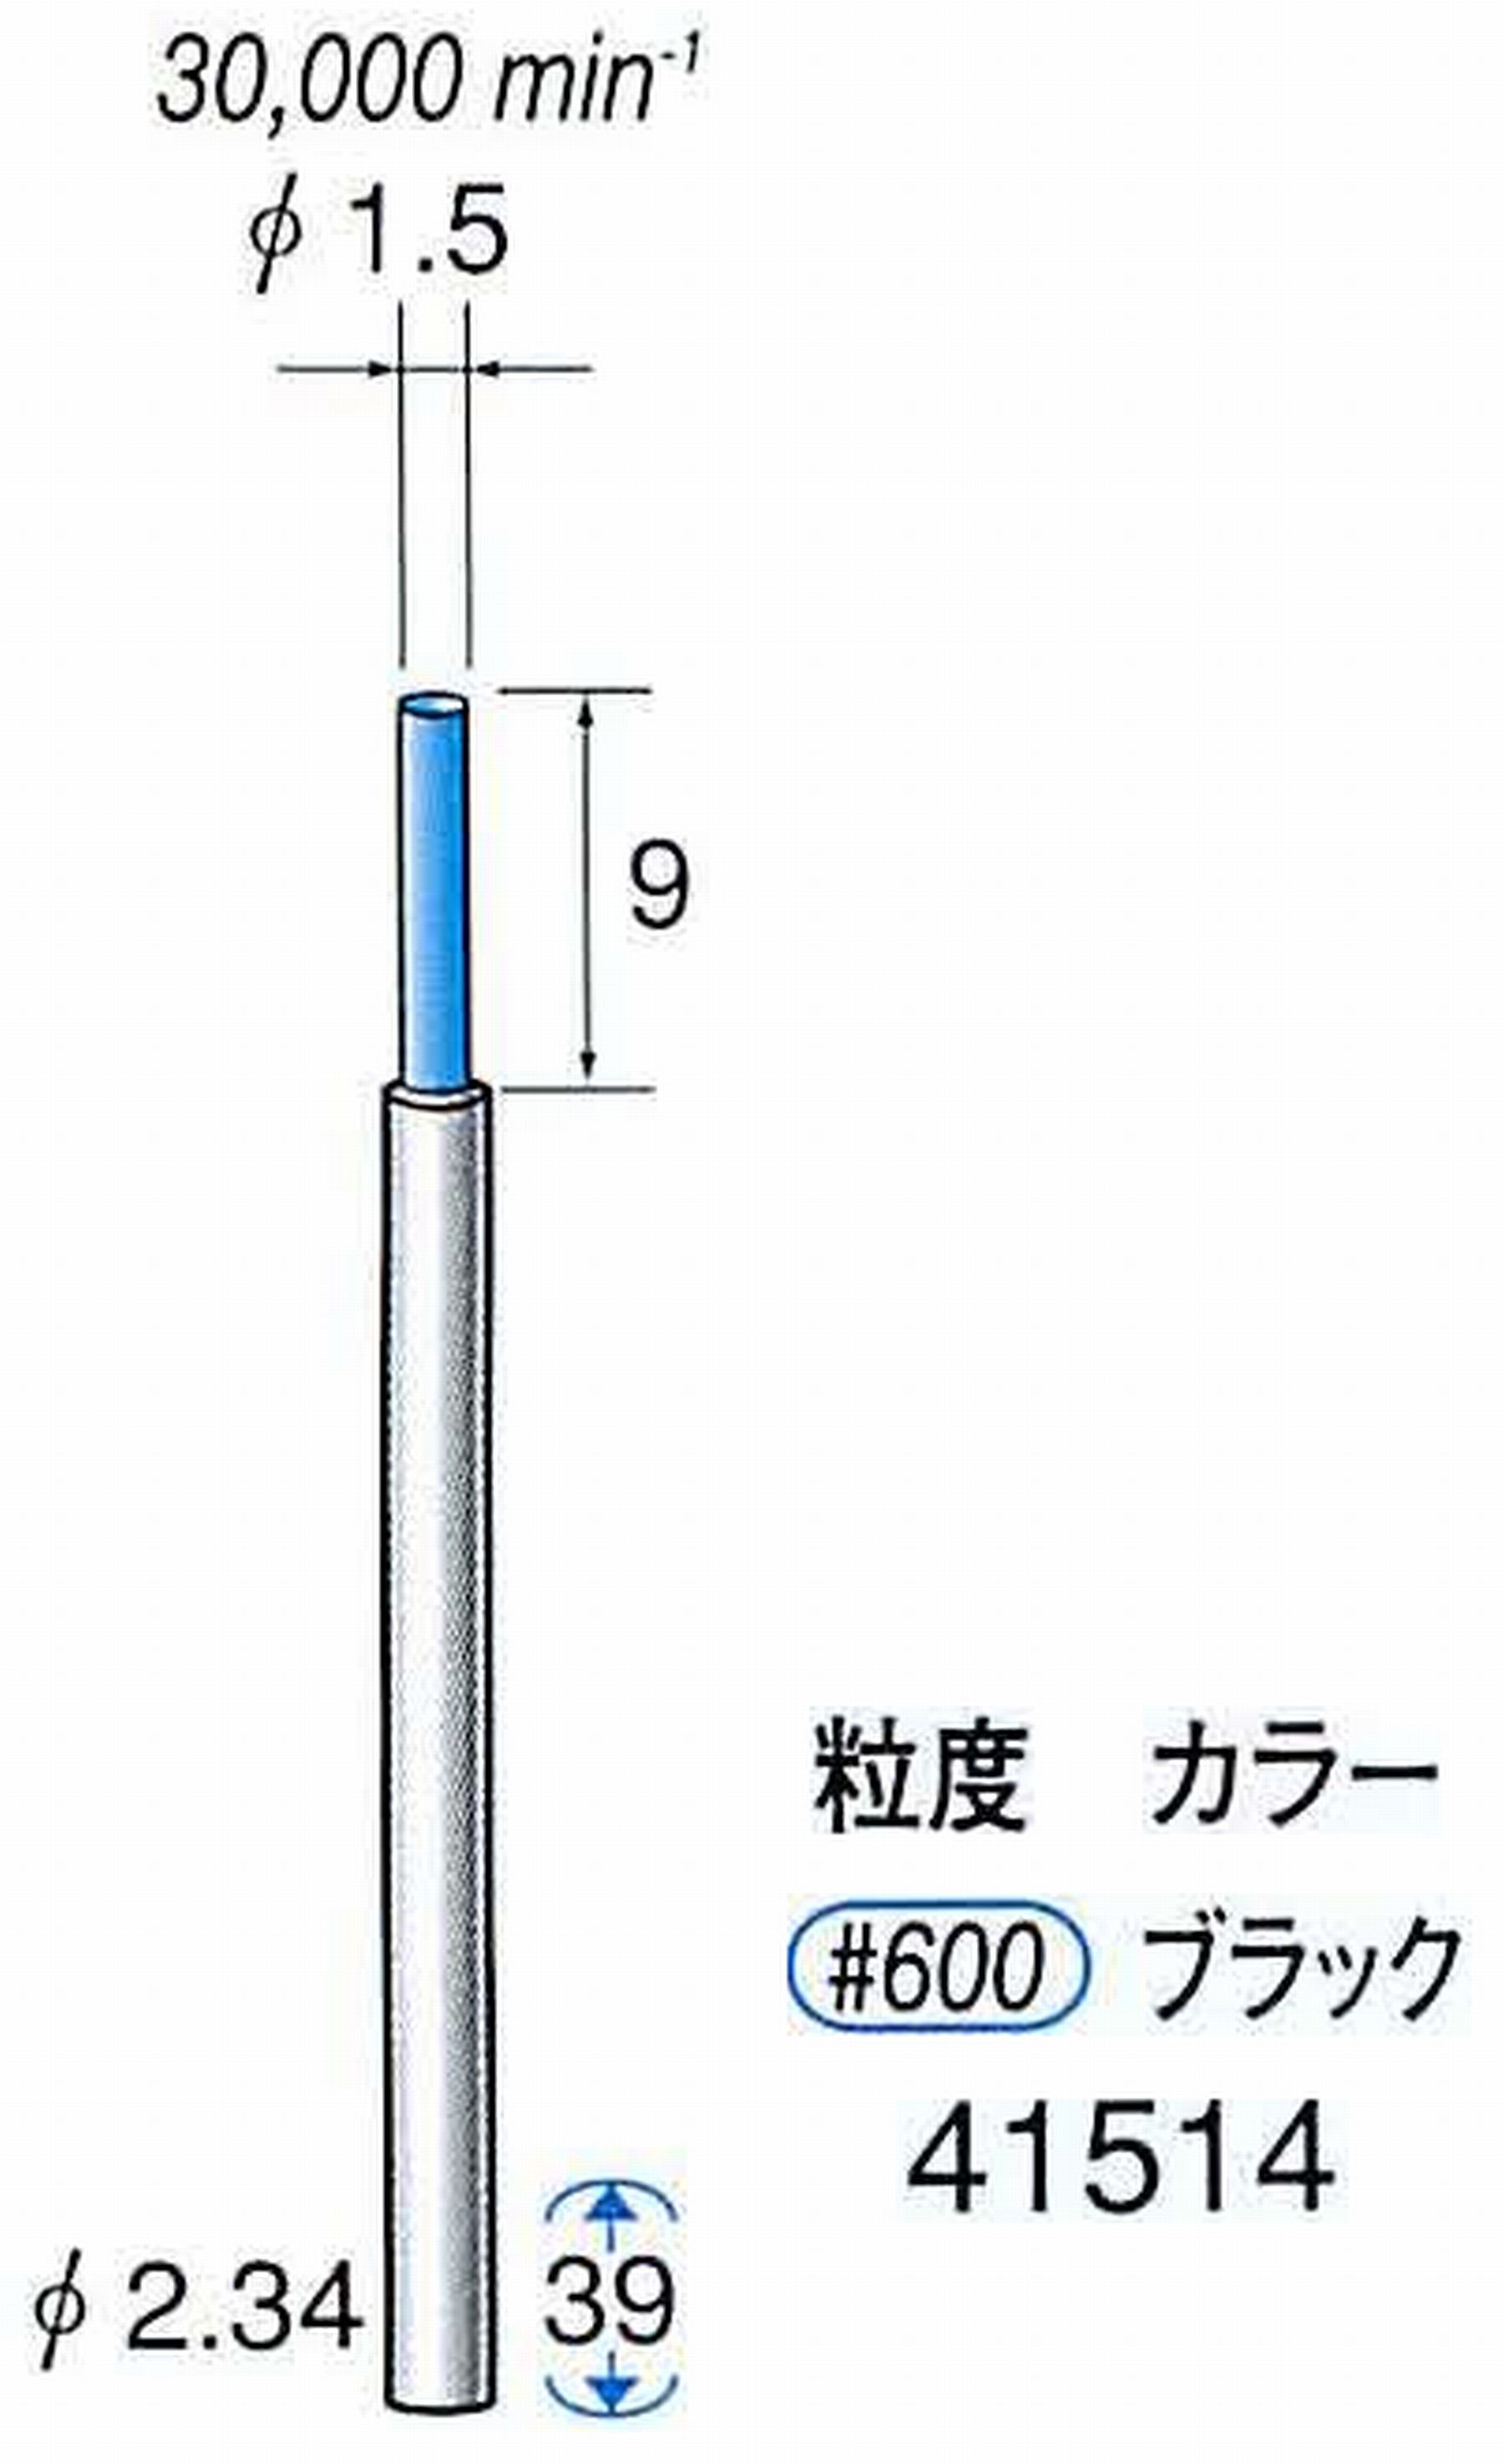 ナカニシ/NAKANISHI セラファイバー精密軸付砥石(カラー ブラック) 軸径(シャンク) φ2.34mm 41514